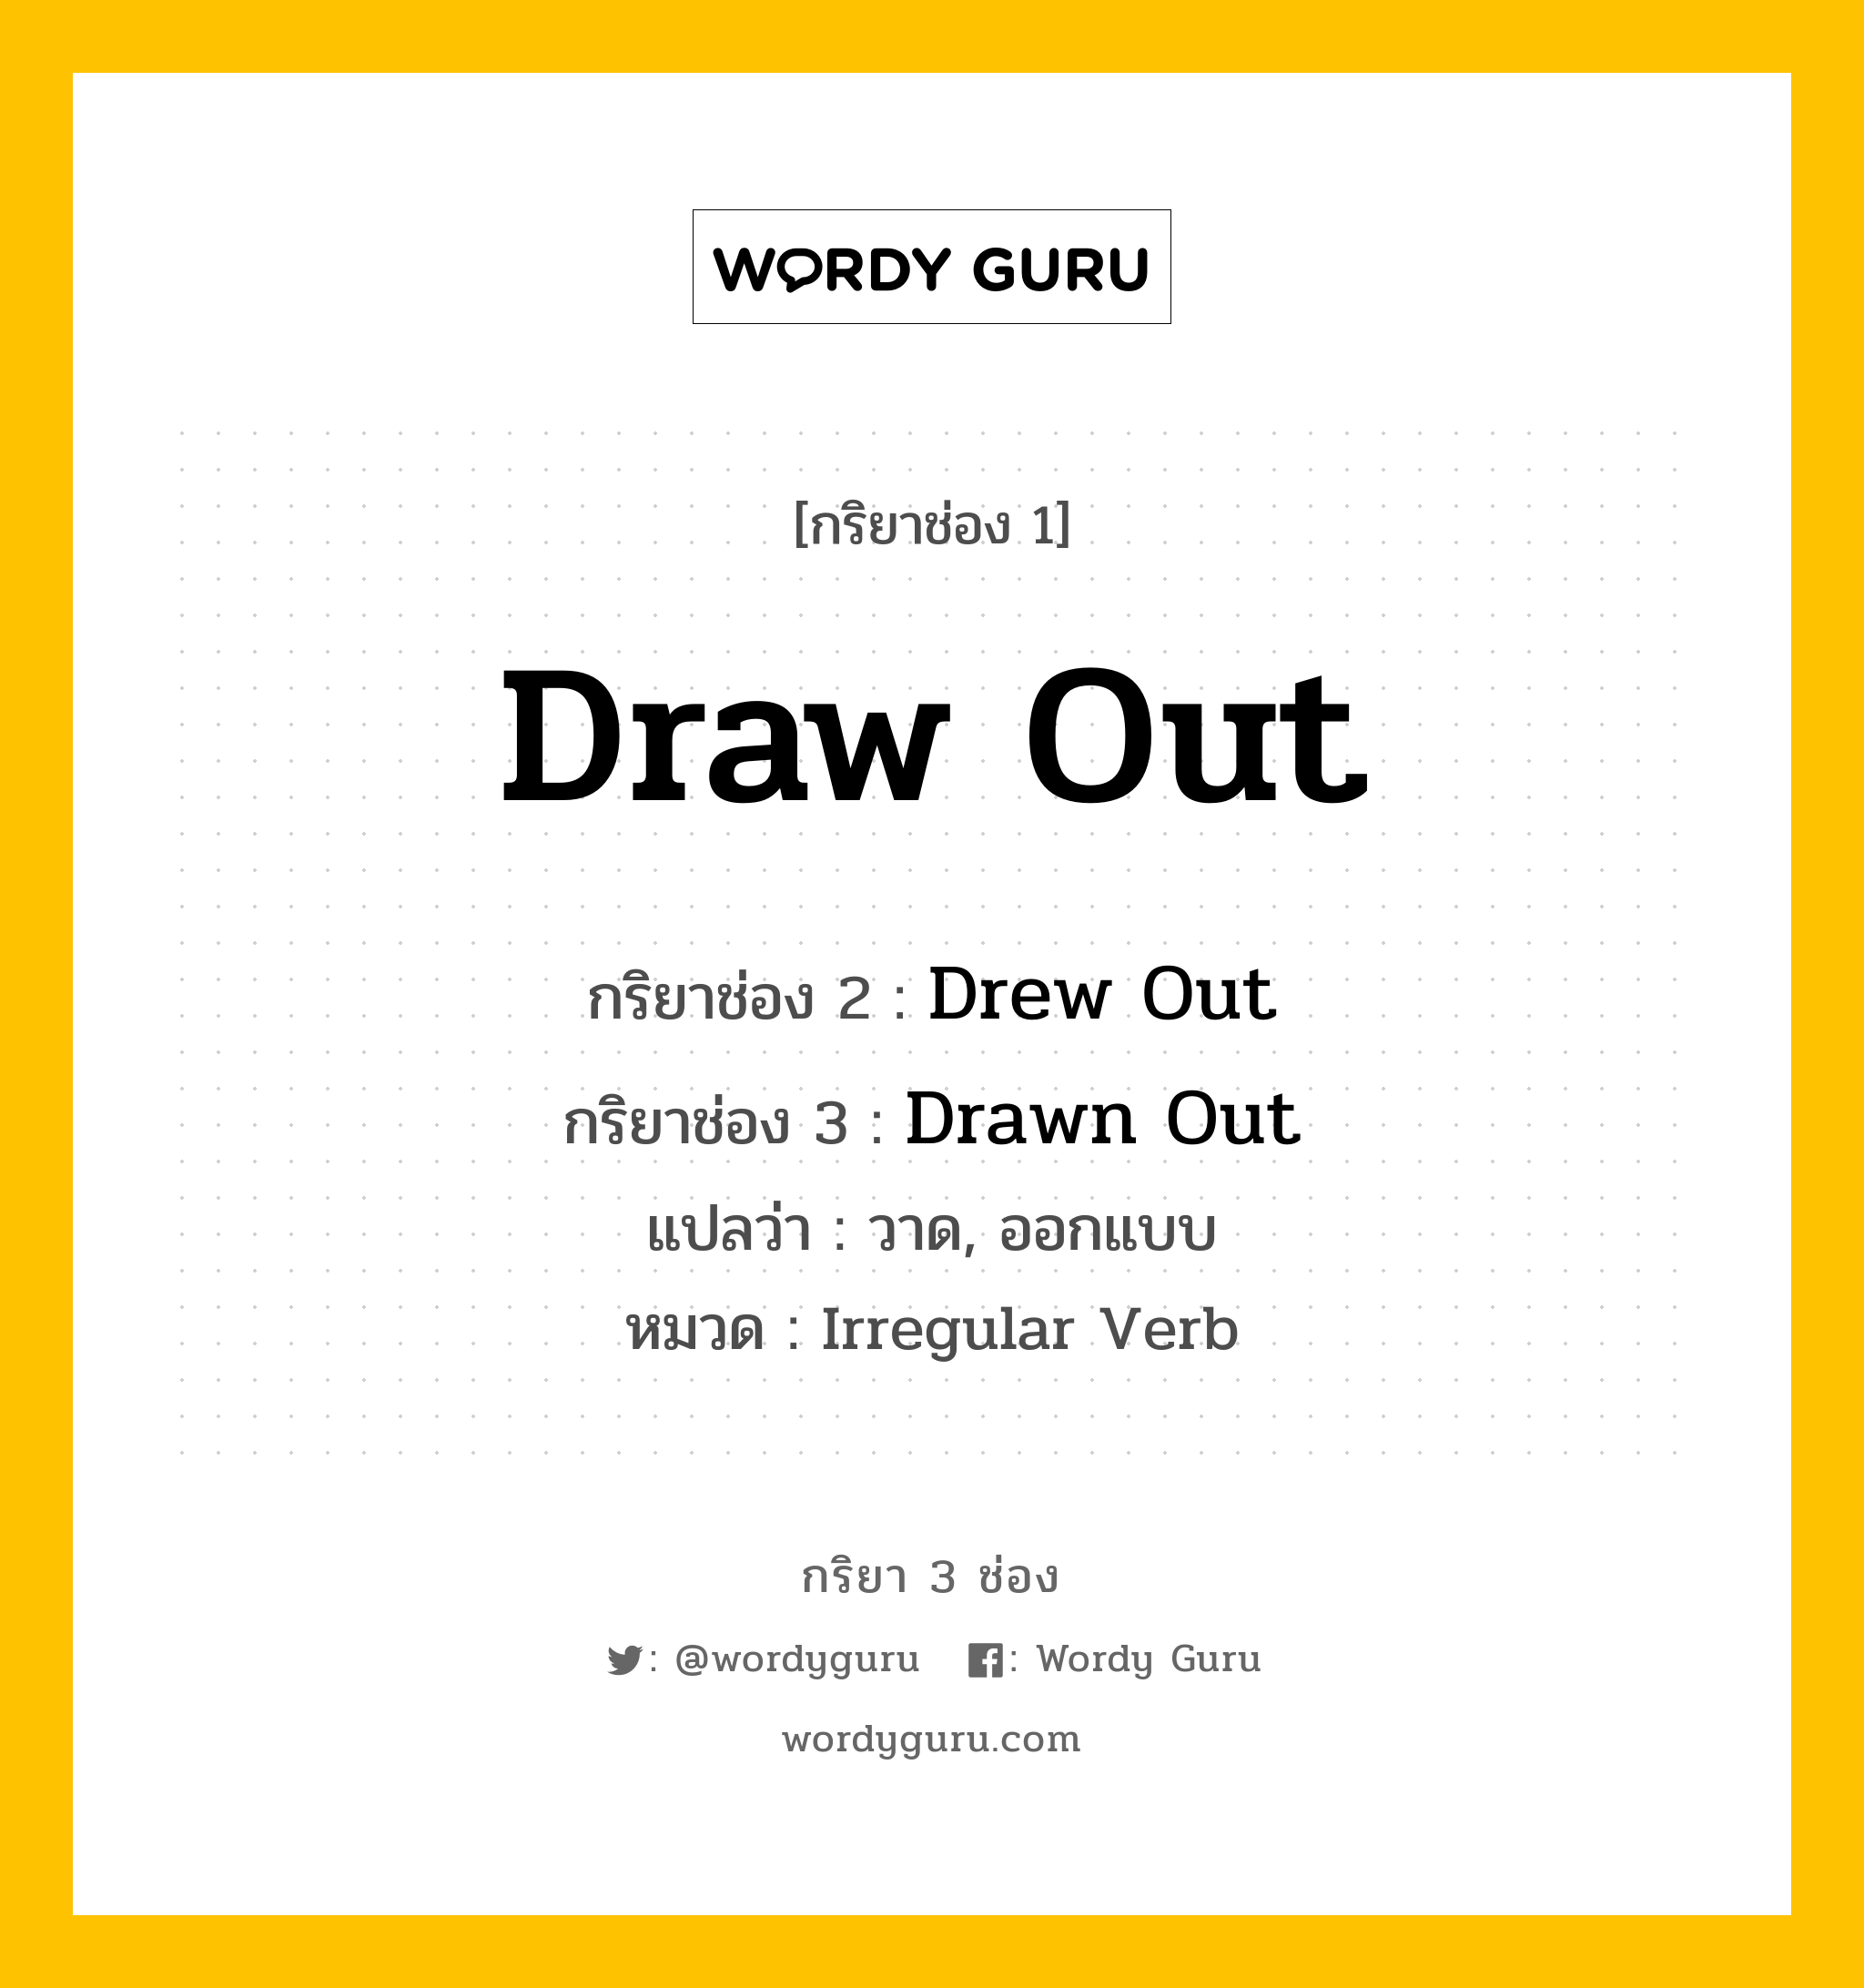 กริยา 3 ช่อง: Draw Out ช่อง 2 Draw Out ช่อง 3 คืออะไร, กริยาช่อง 1 Draw Out กริยาช่อง 2 Drew Out กริยาช่อง 3 Drawn Out แปลว่า วาด, ออกแบบ หมวด Irregular Verb หมวด Irregular Verb